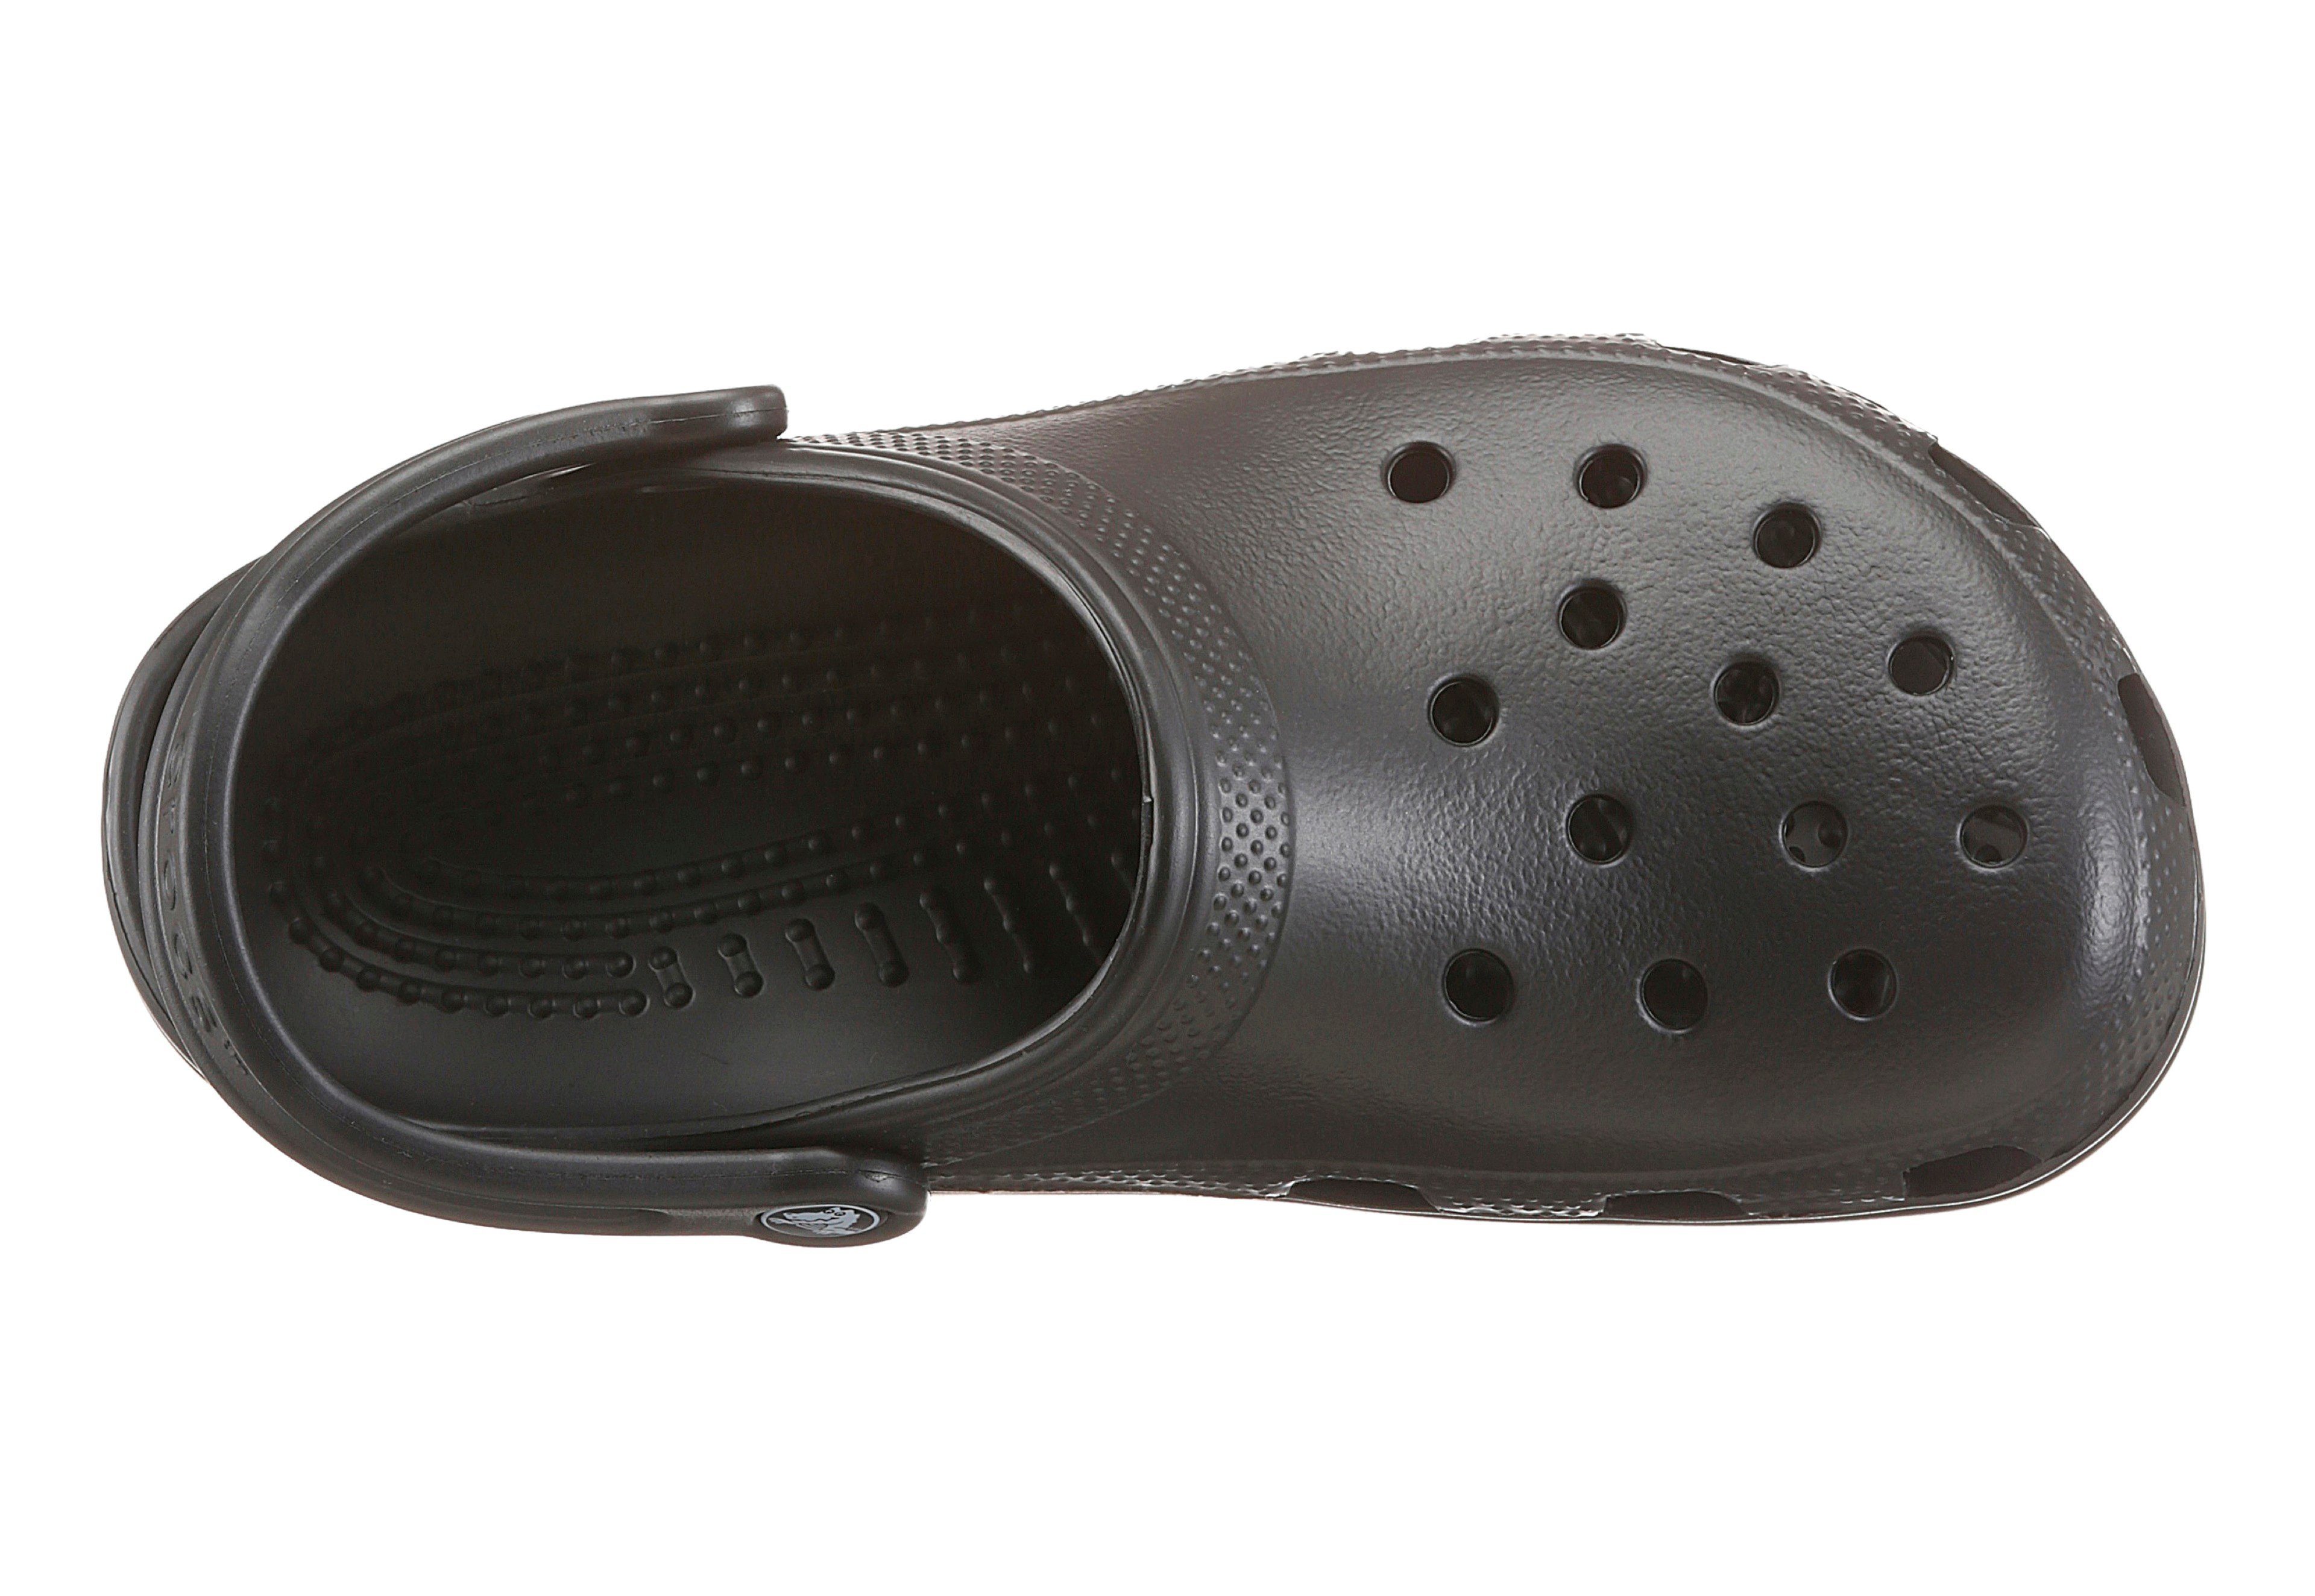 Crocs Classic mit Logo typischem schwarz Clog